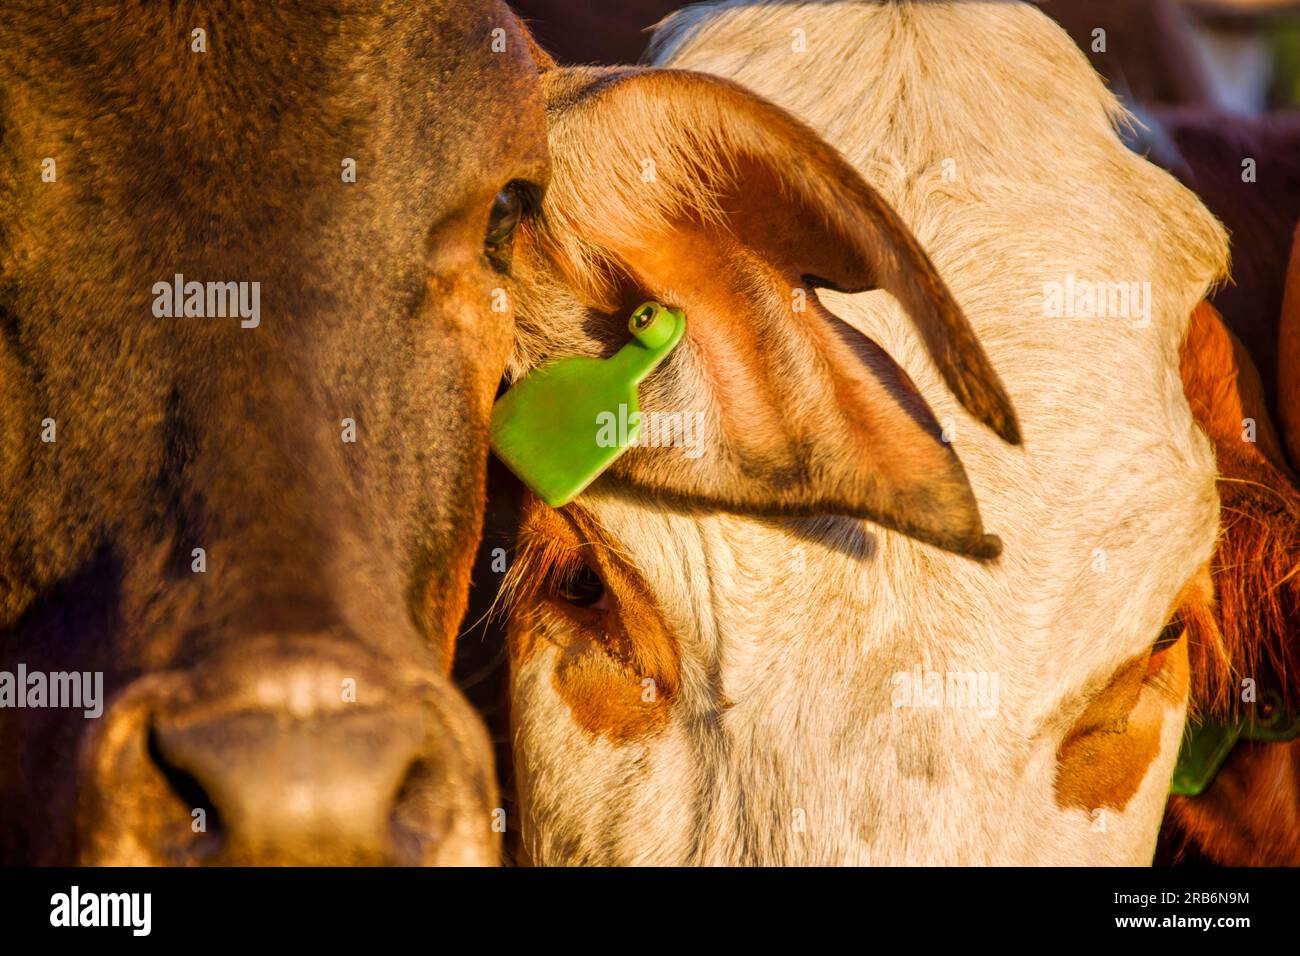 agriculture africaine, gros plan de têtes de vache dans une ferme au botswana Banque D'Images